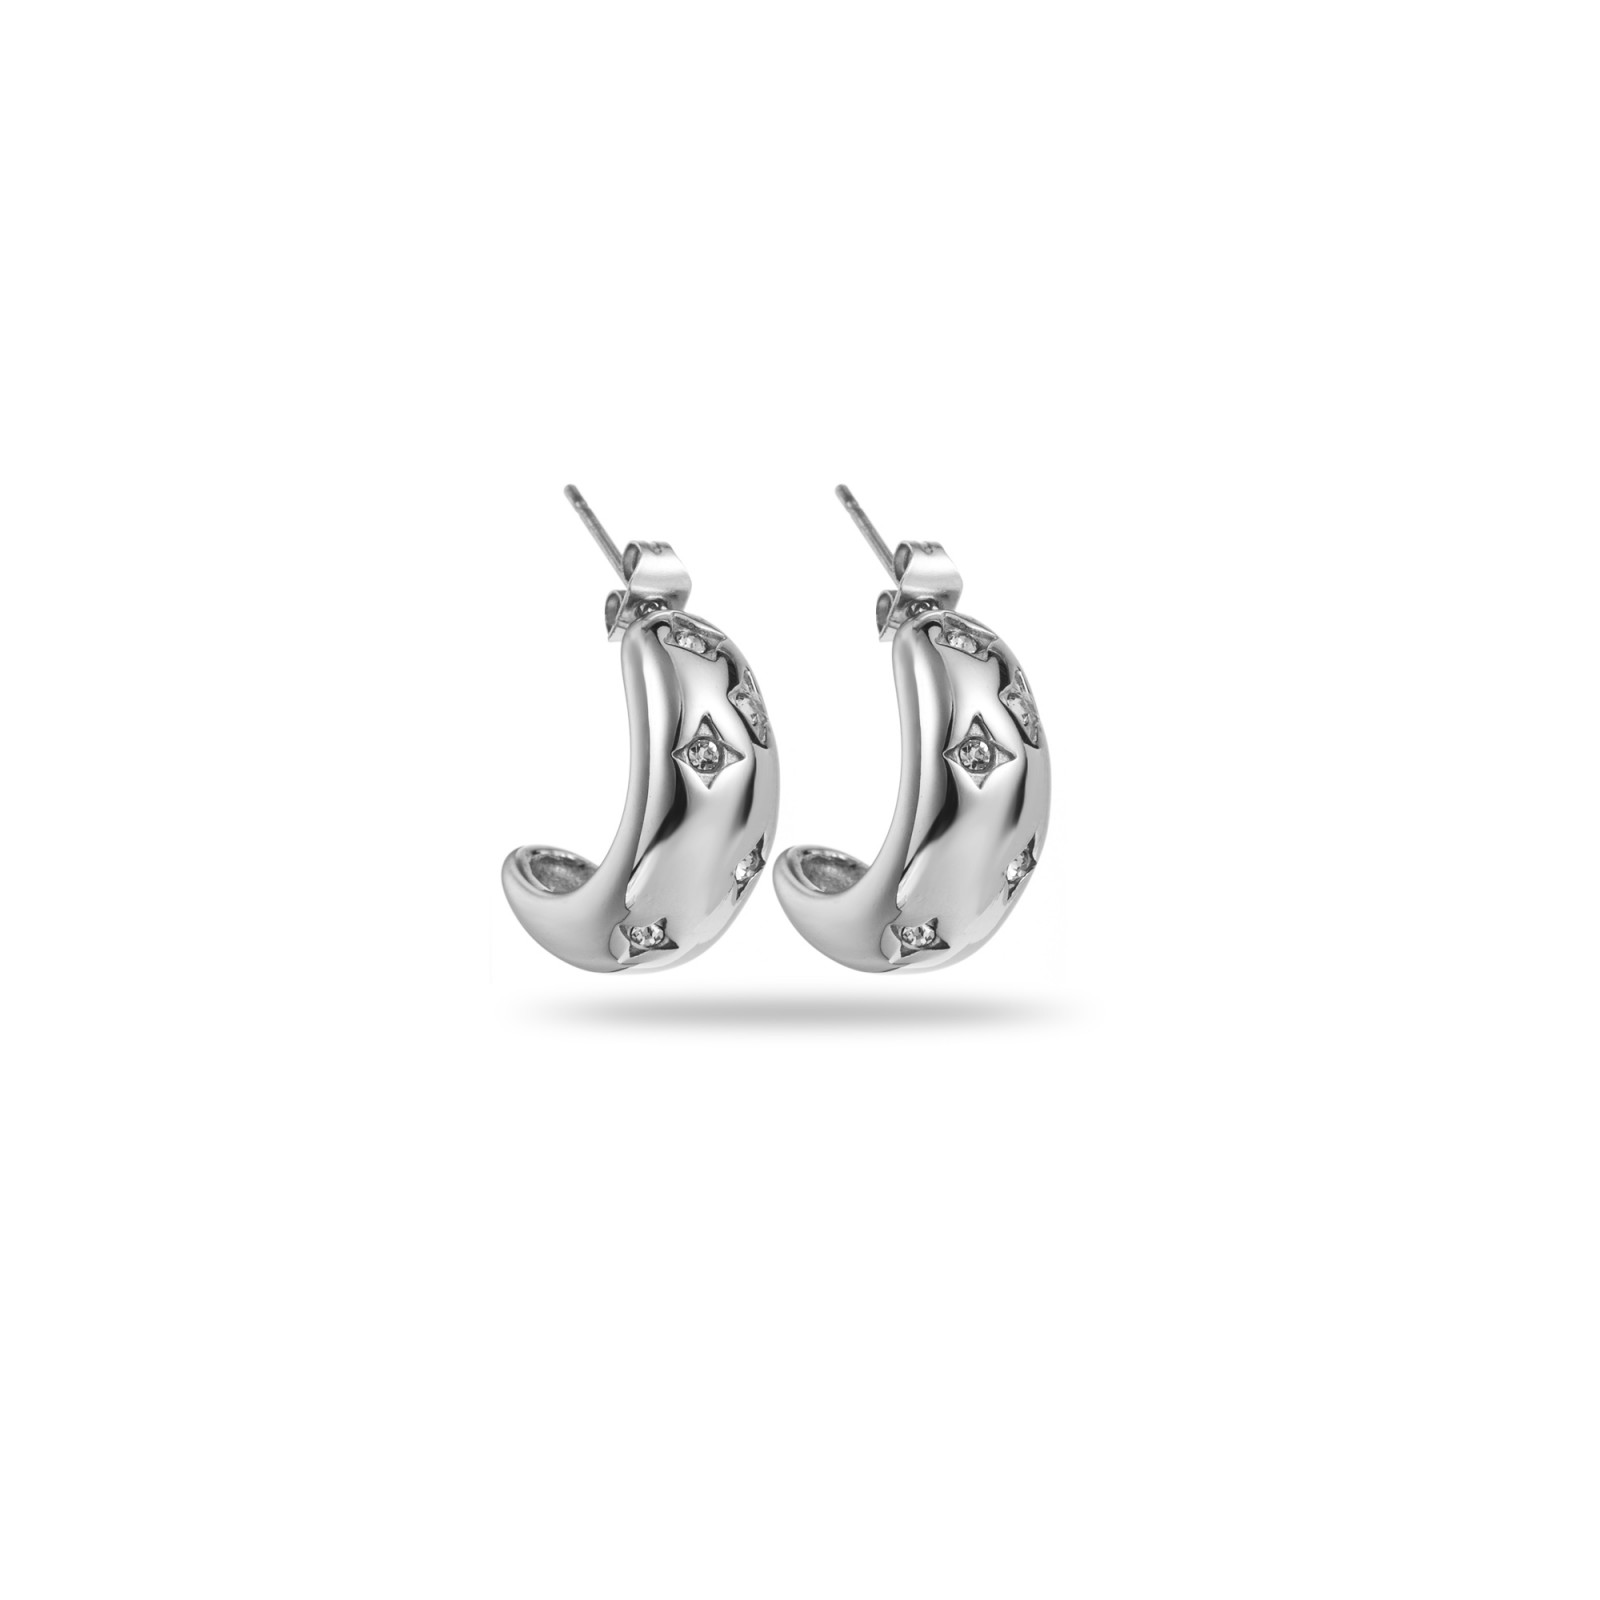 Rhinestone Star Hoops Earrings